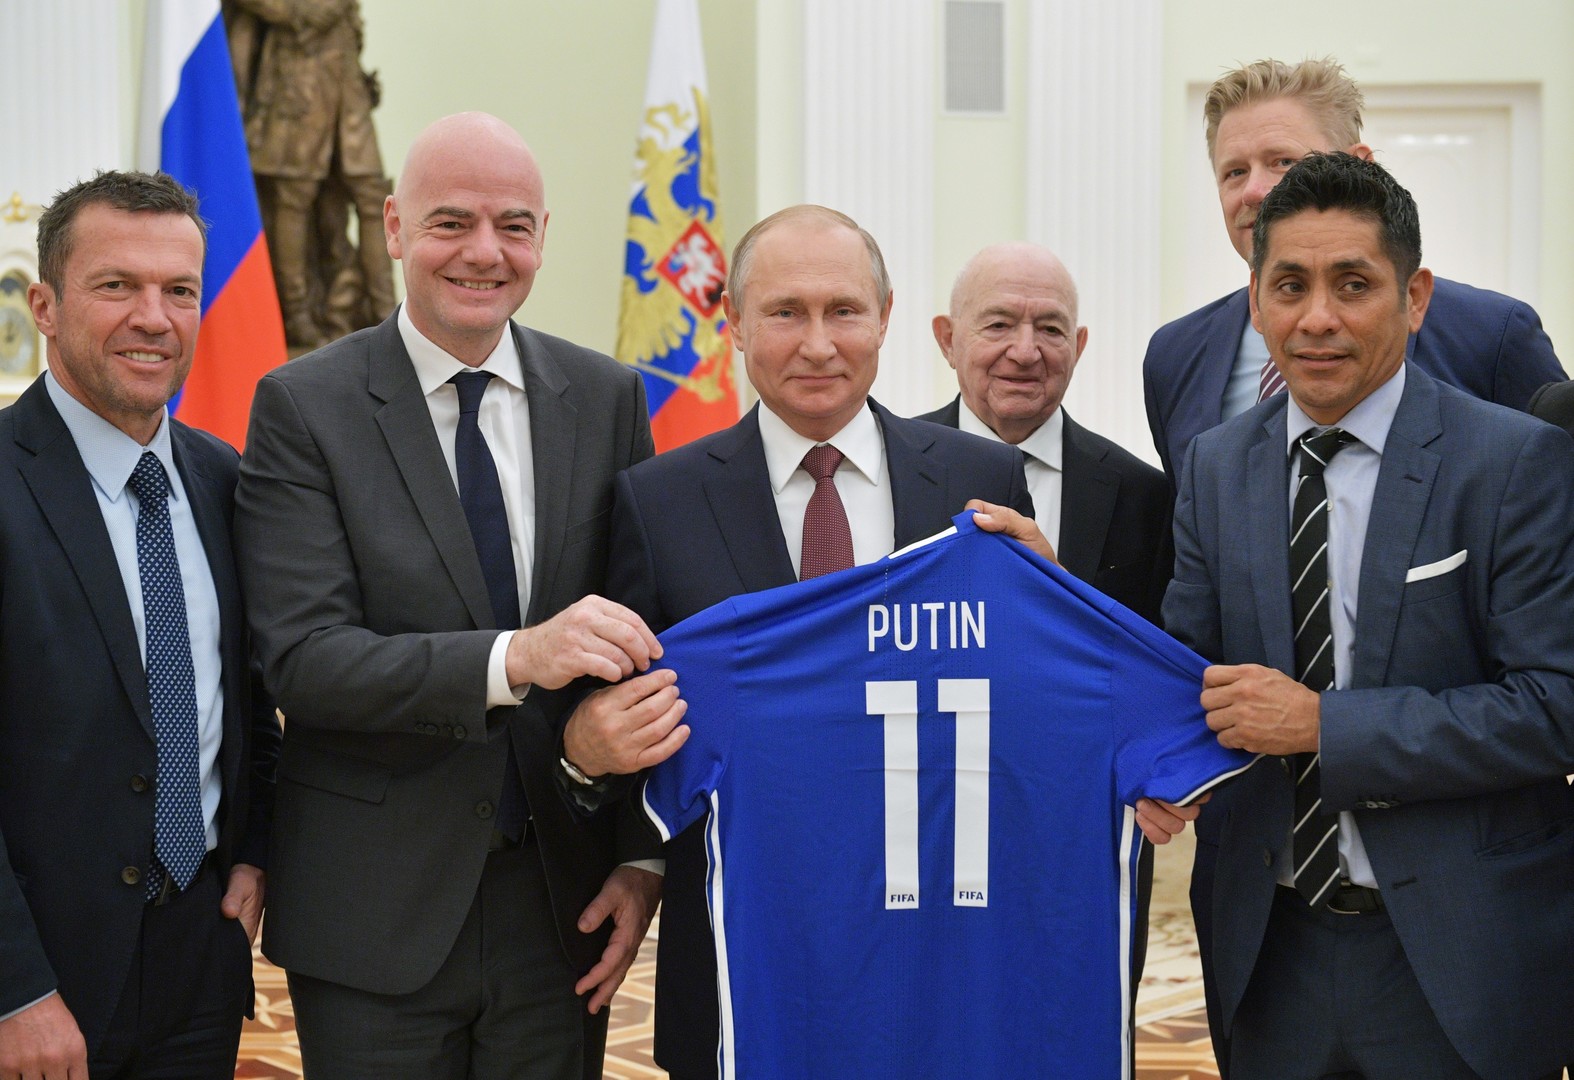 بوتين يتلقى هدية مميزة من رئيس "الفيفا" وأساطير كرة القدم